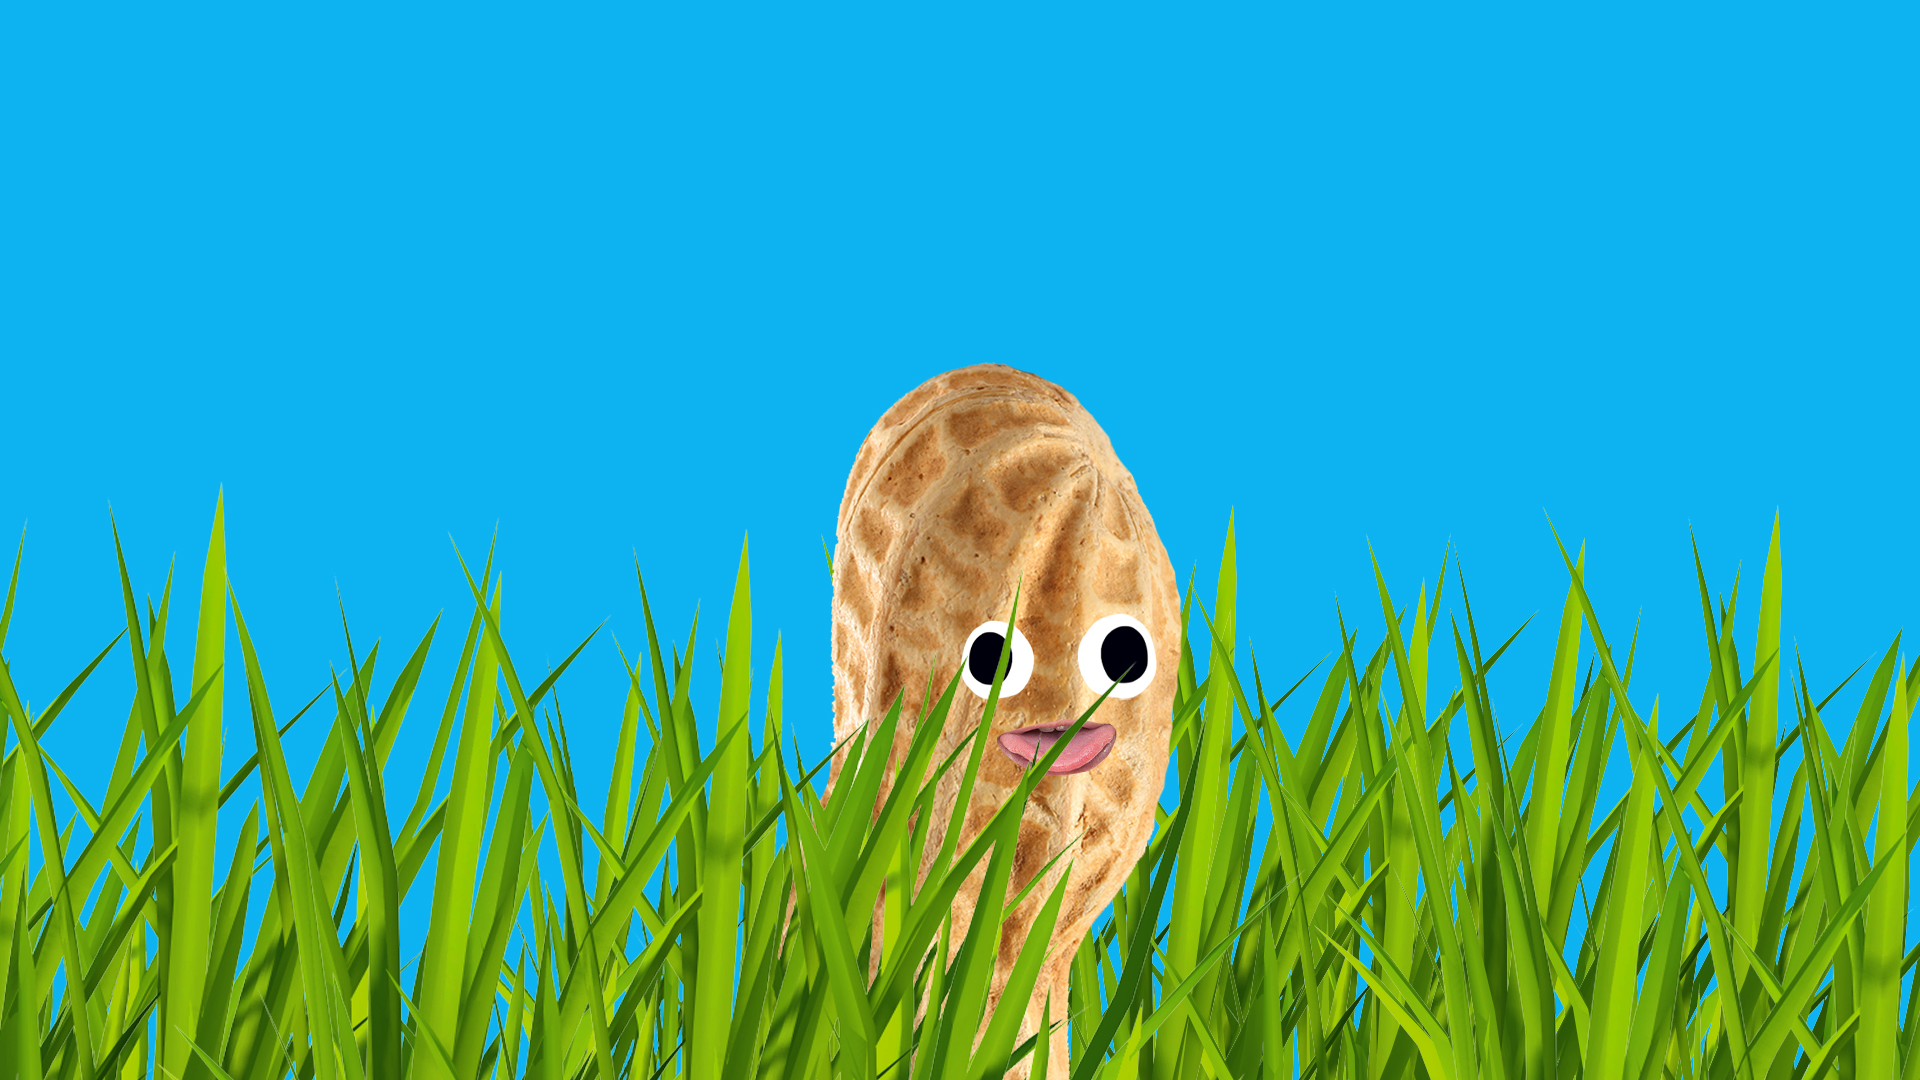 peanut in the grass